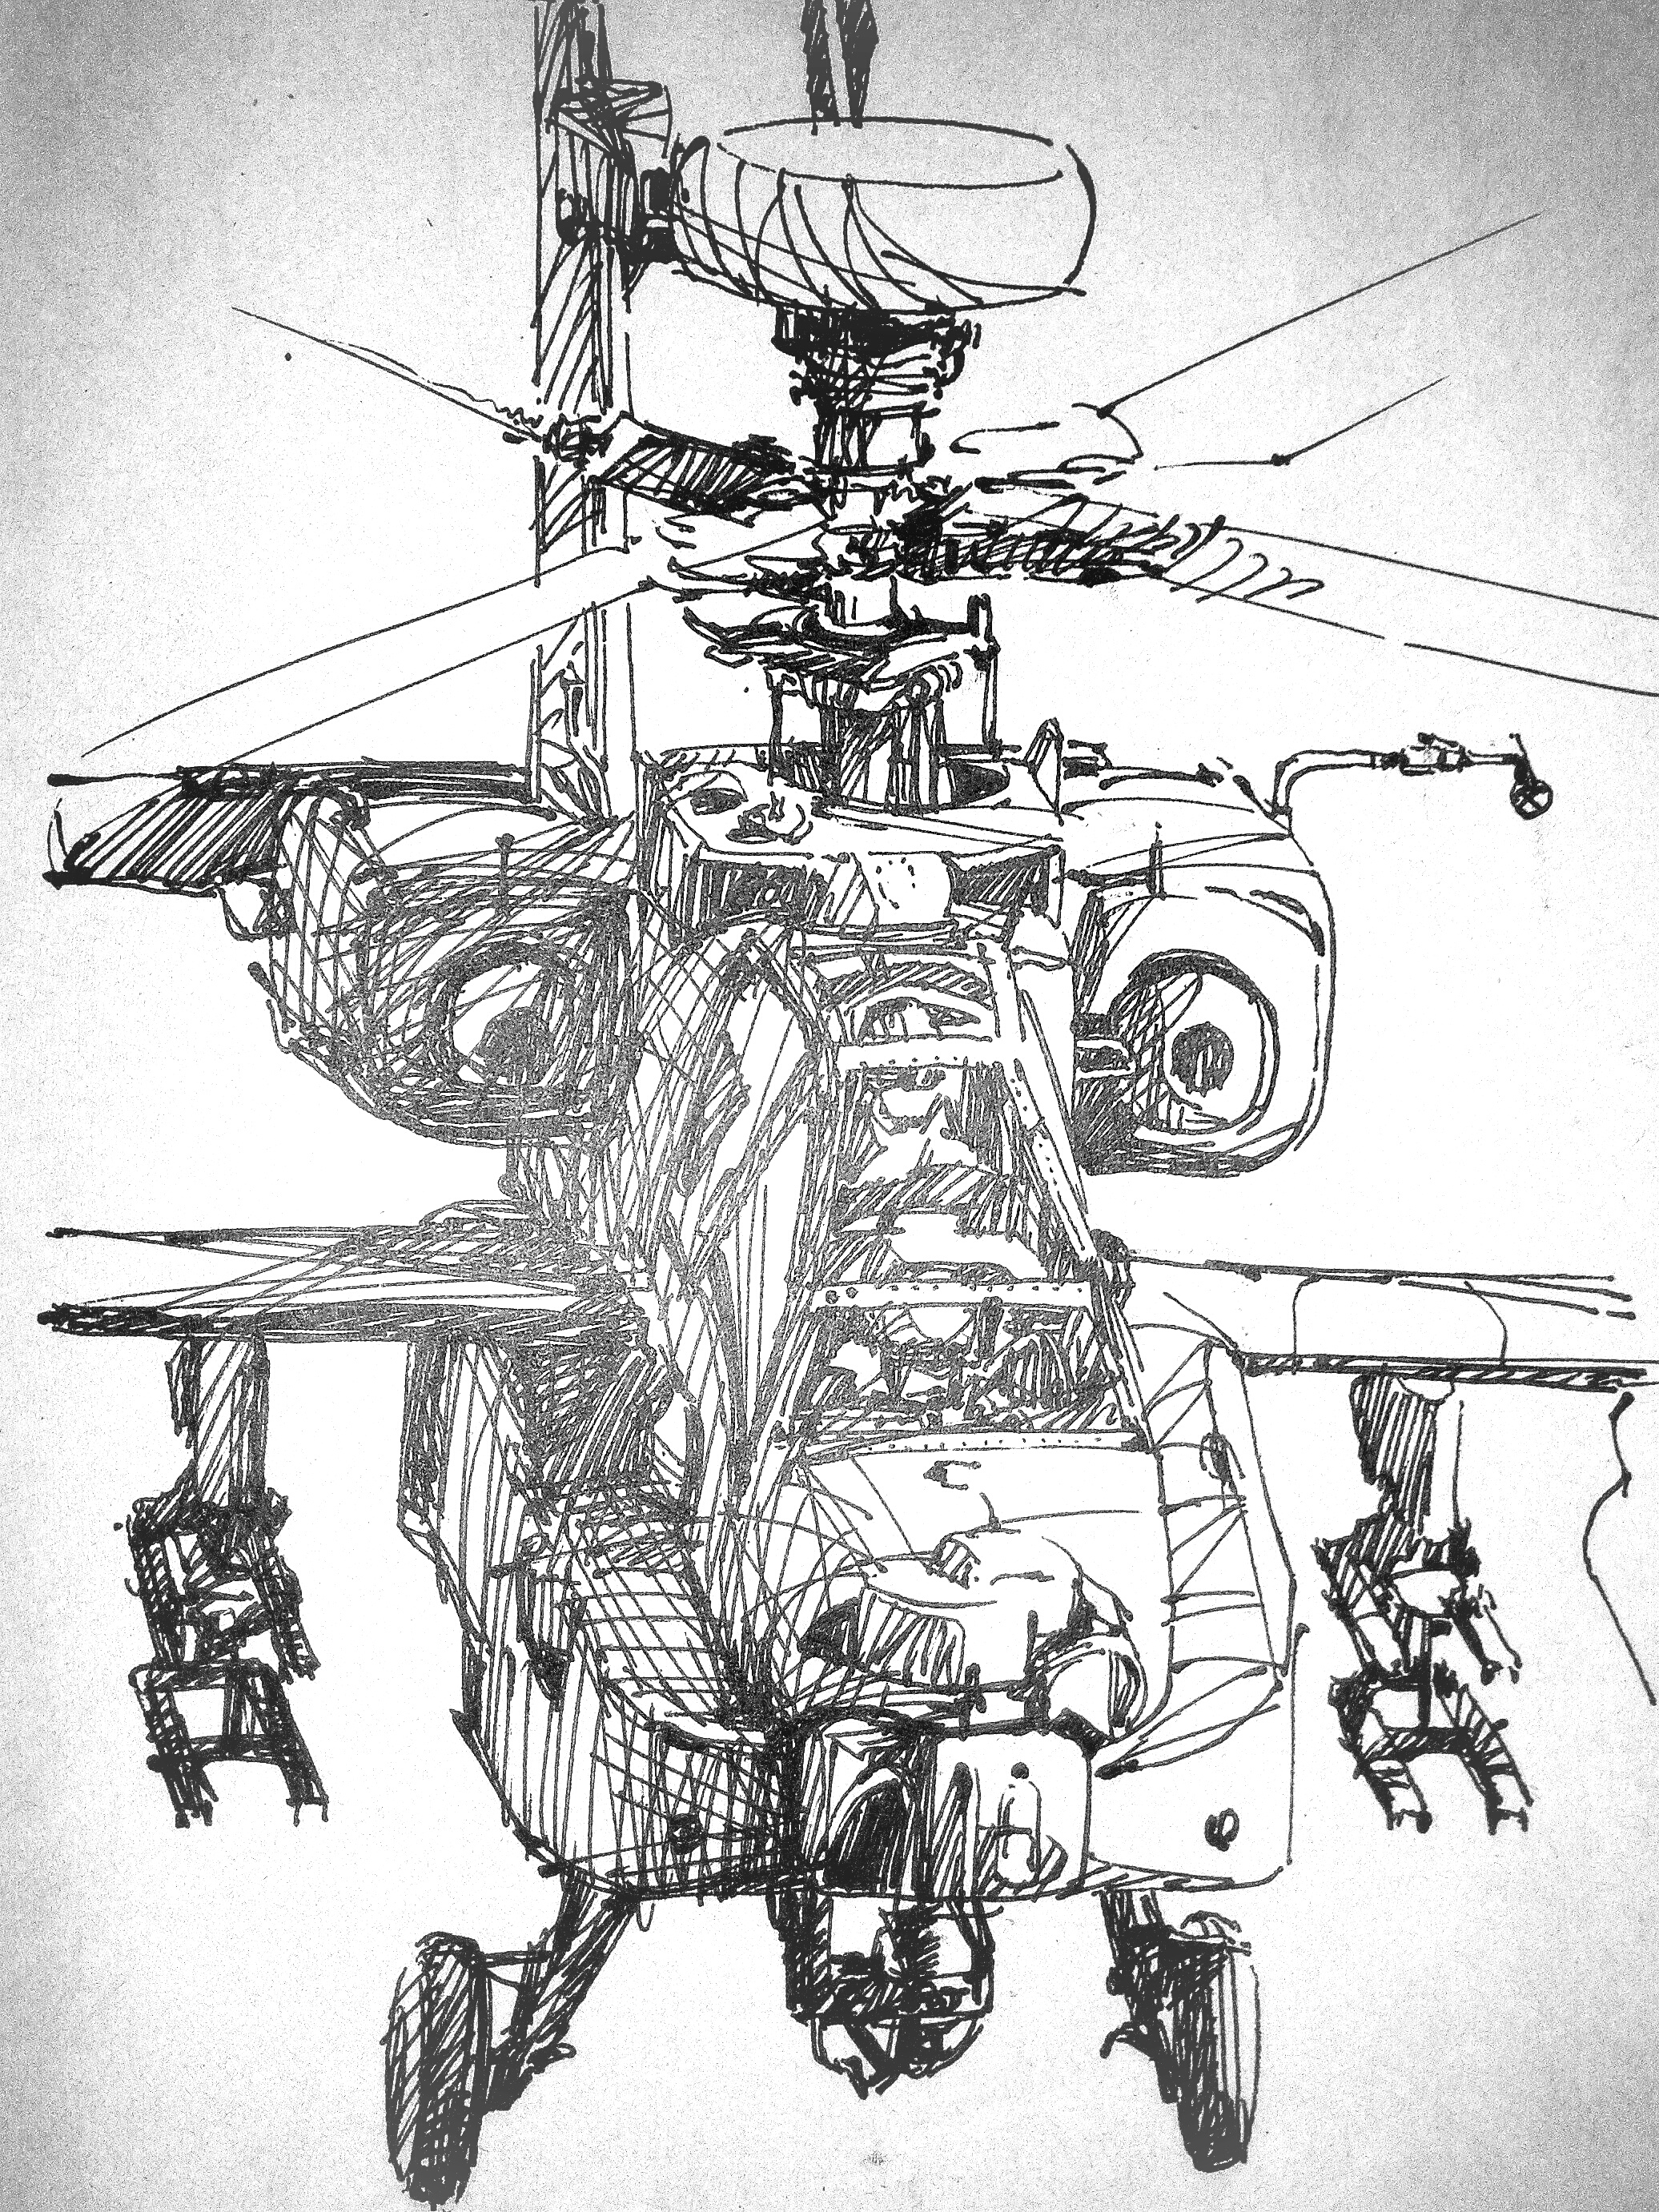 画一架阿帕奇直升机图片